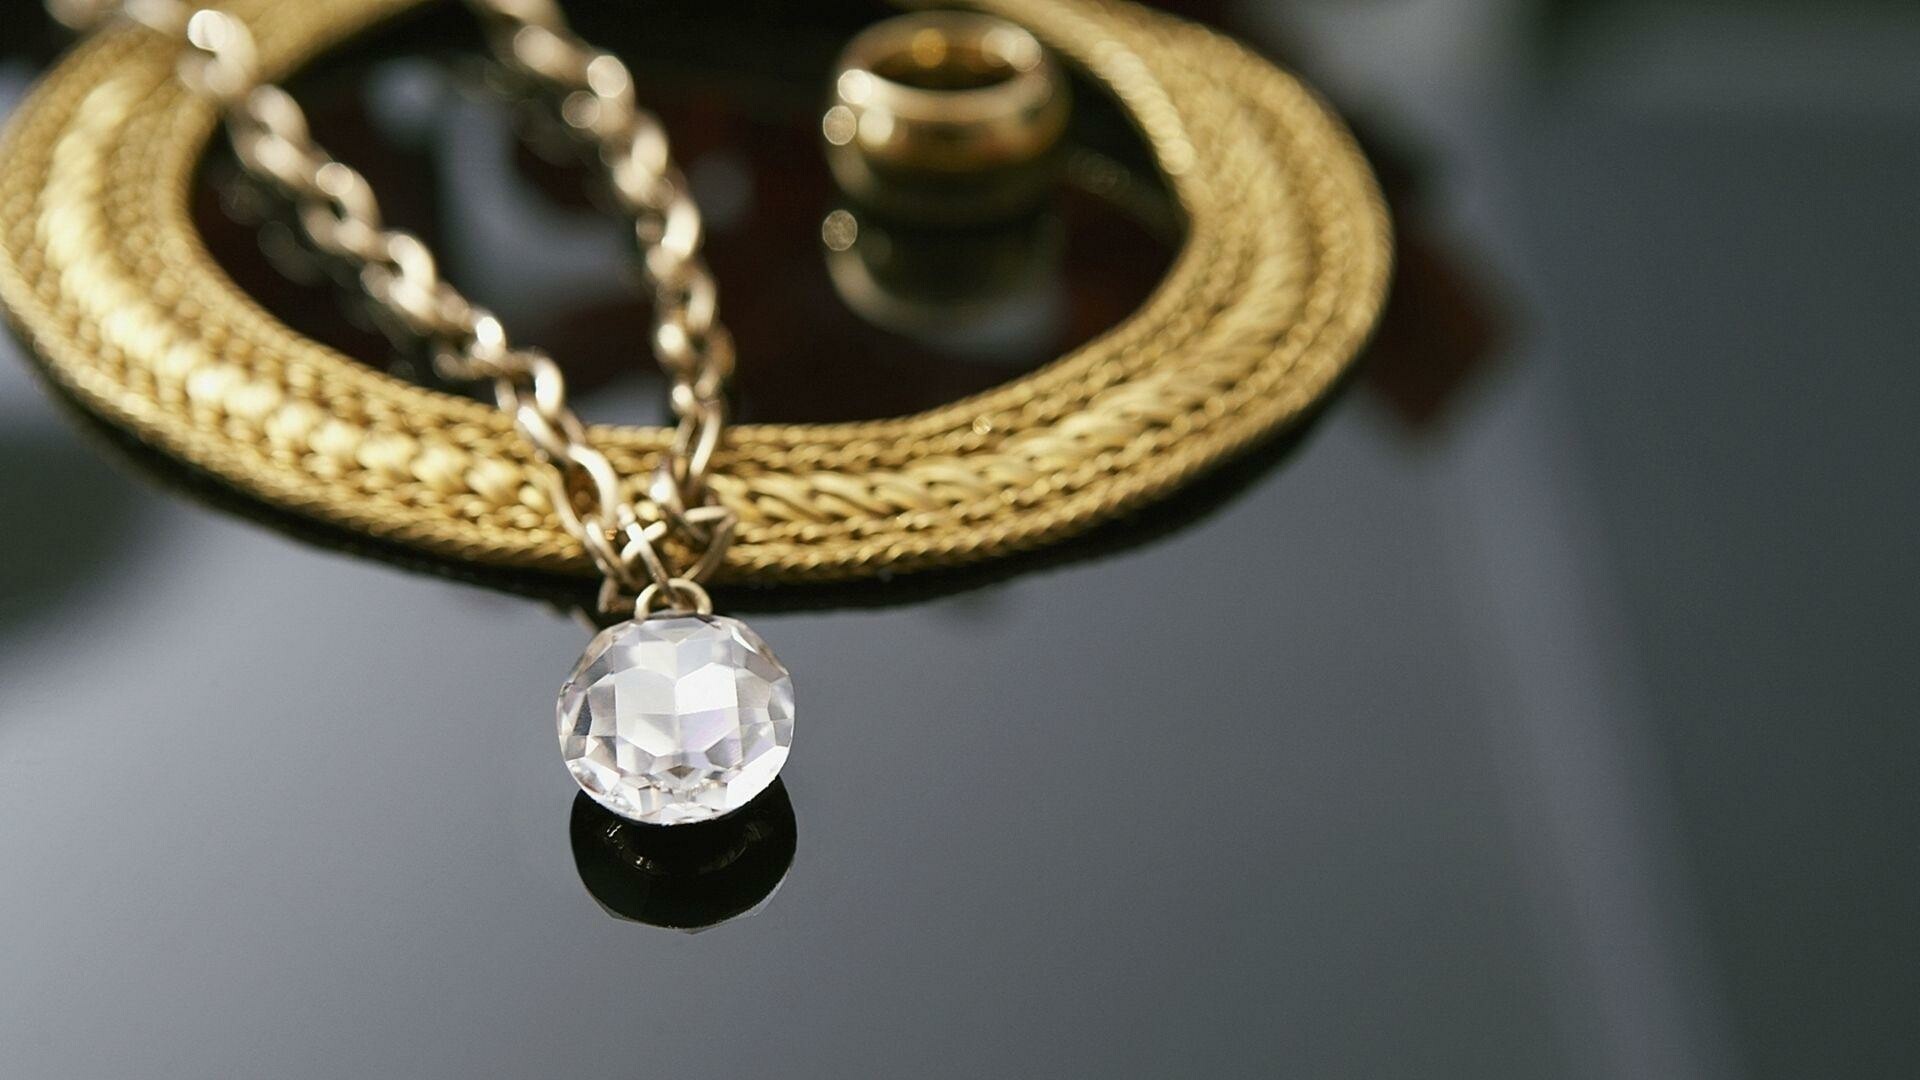 Jewels: Diamond, Pendant, Personal ornament. 1920x1080 Full HD Wallpaper.